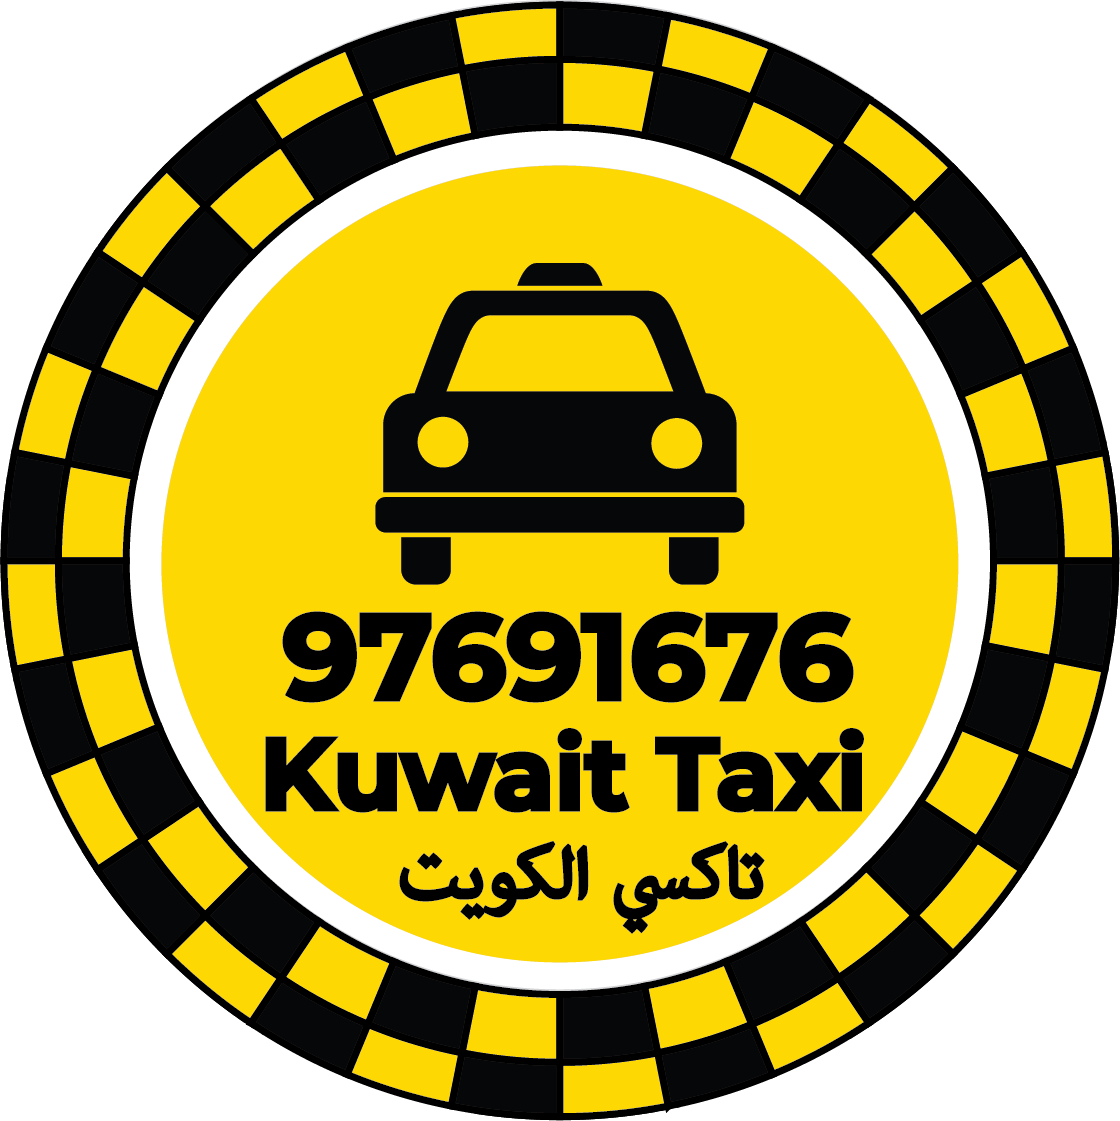 Sharq Taxi Kuwait – Taxi Number Sharq